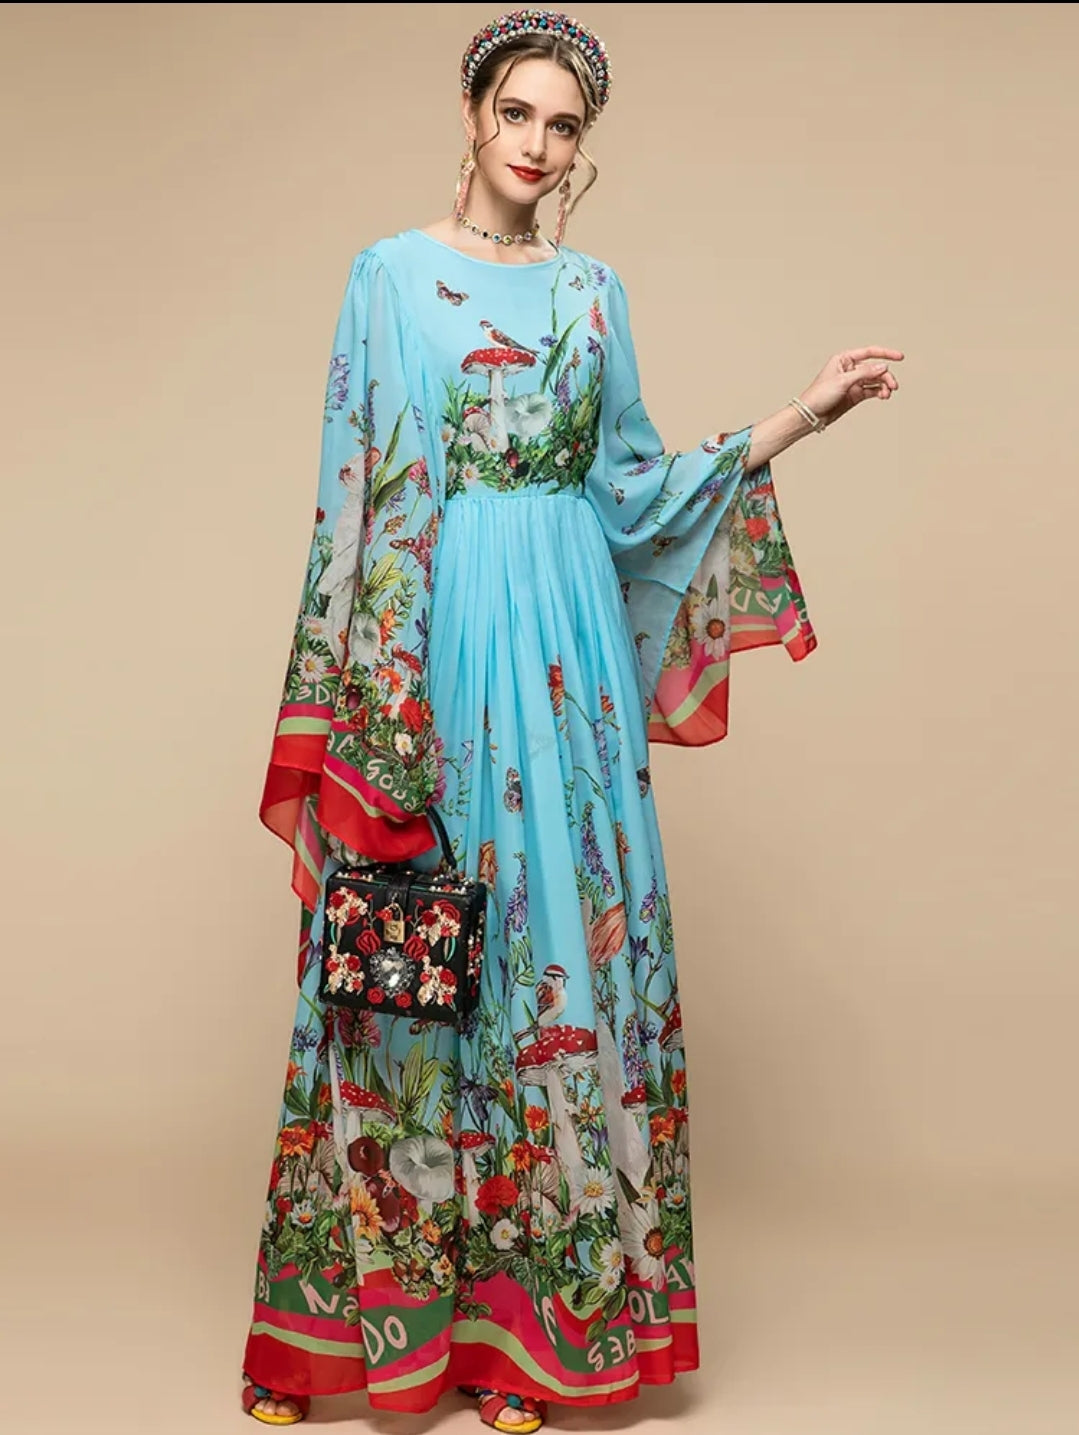 Linda Floral Long Dress